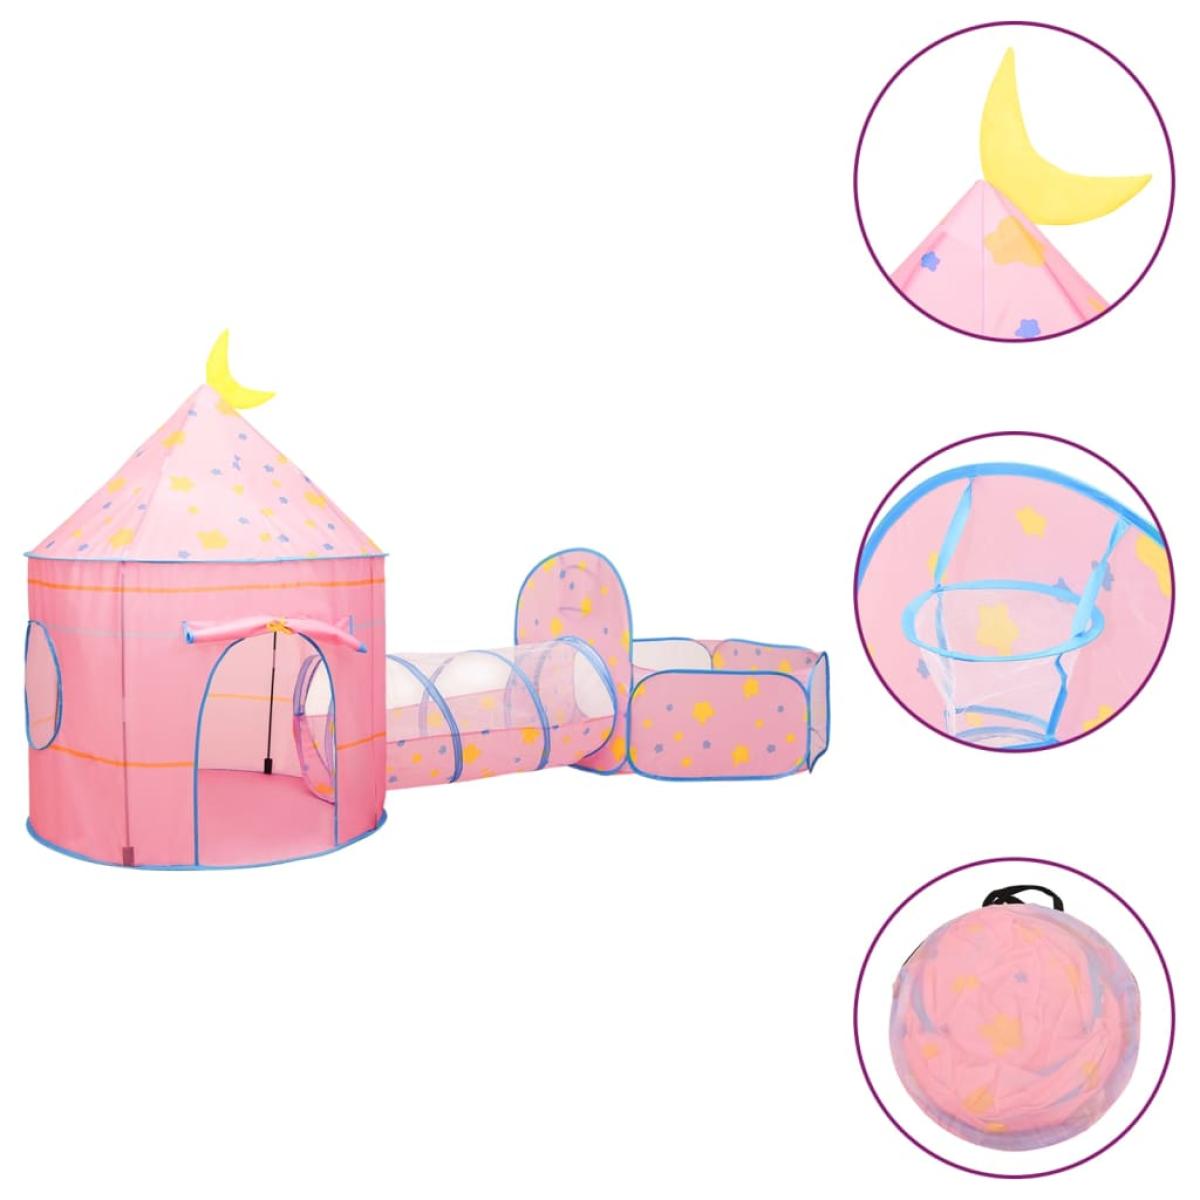 Tienda de juegos para niños con 250 bolas rosa 301x120x128 cm